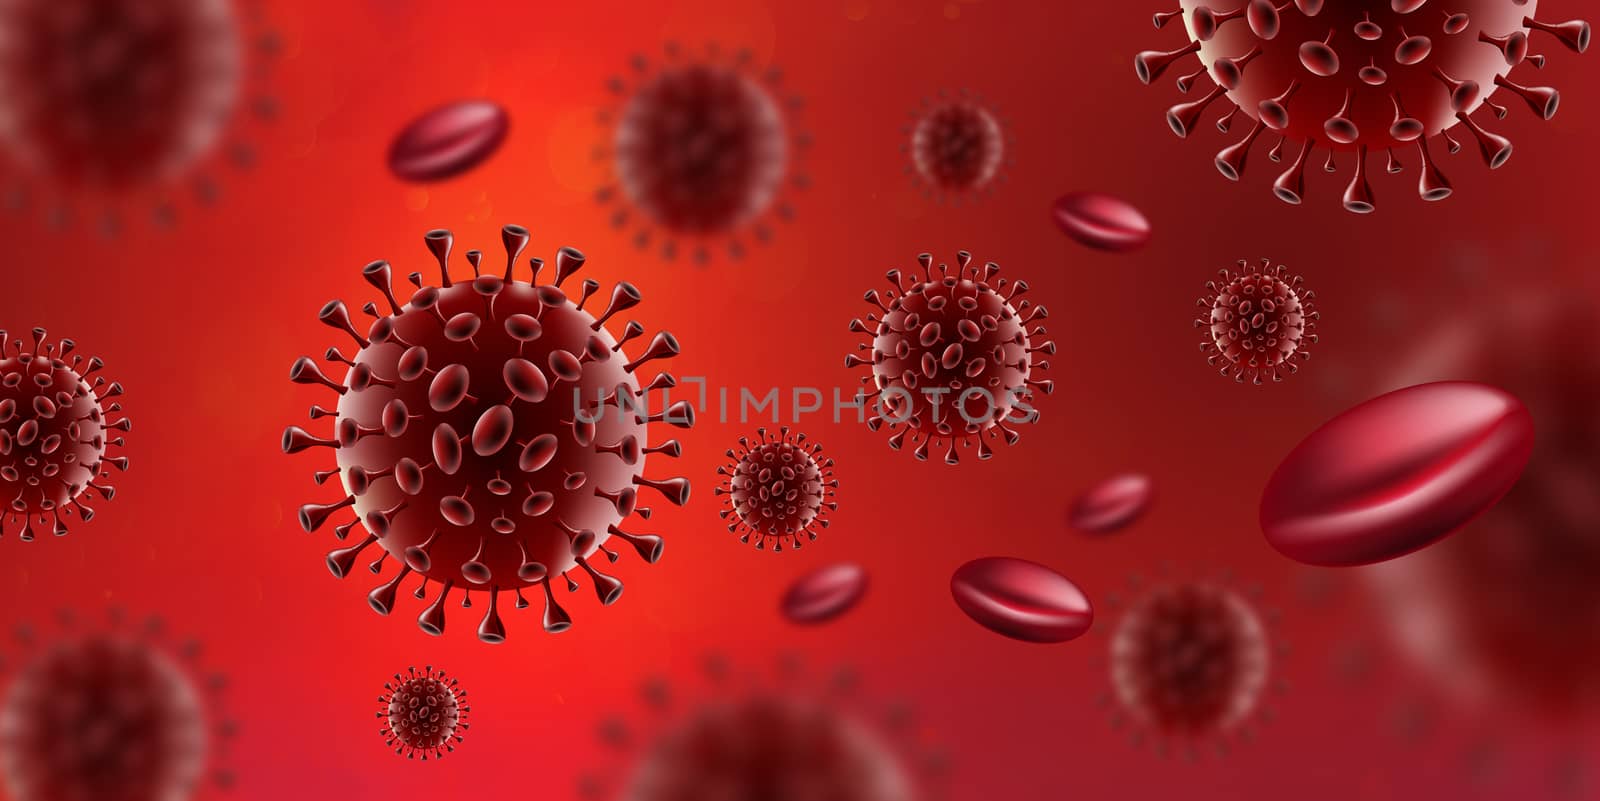 Covid-19 Coronavirus virus in red blood by sarayut_thaneerat